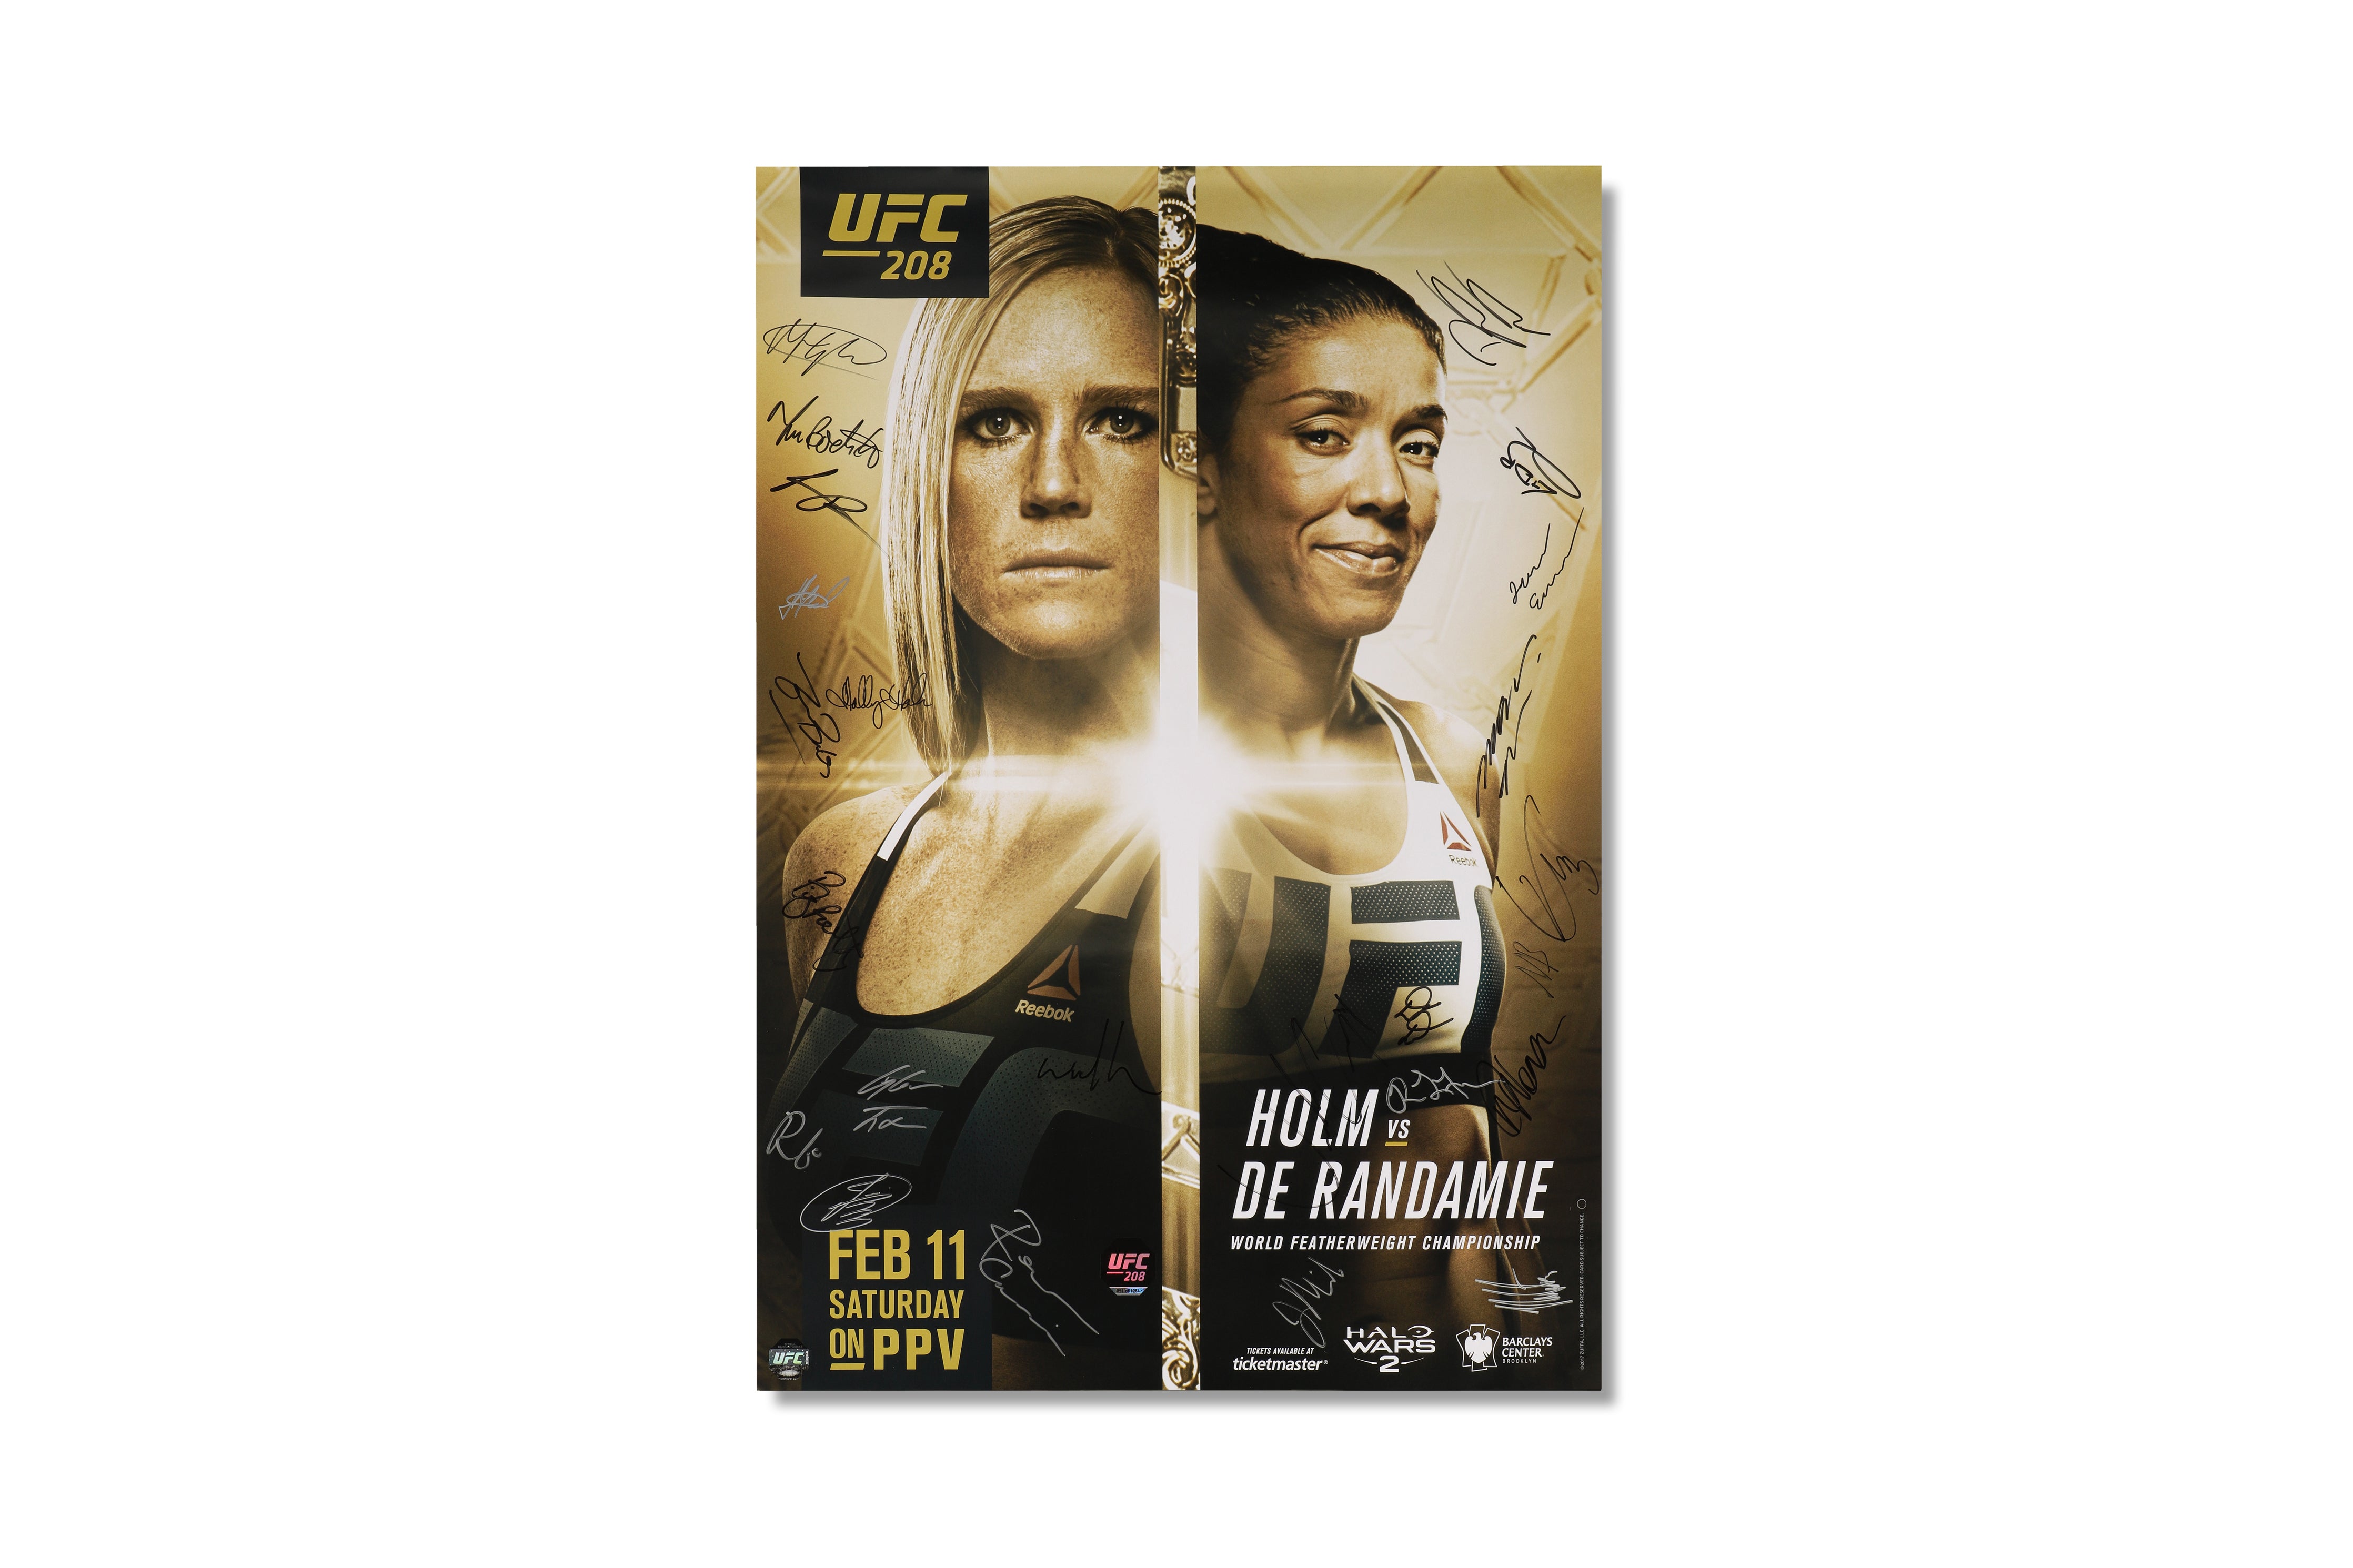 UFC 208: Holm vs de Randamie Autographed Poster